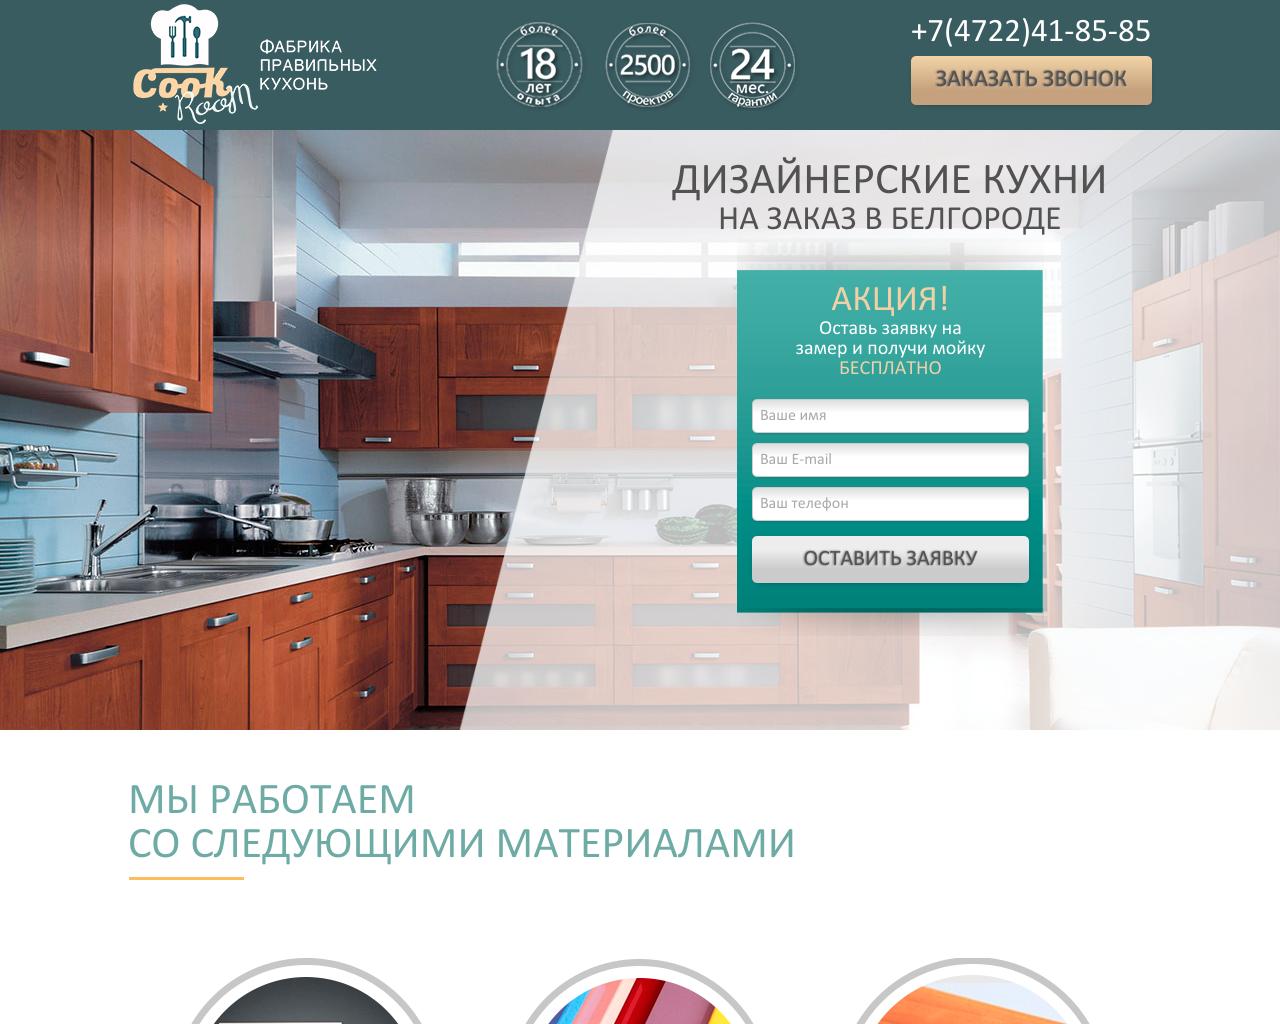 Изображение сайта cookroompro.ru в разрешении 1280x1024